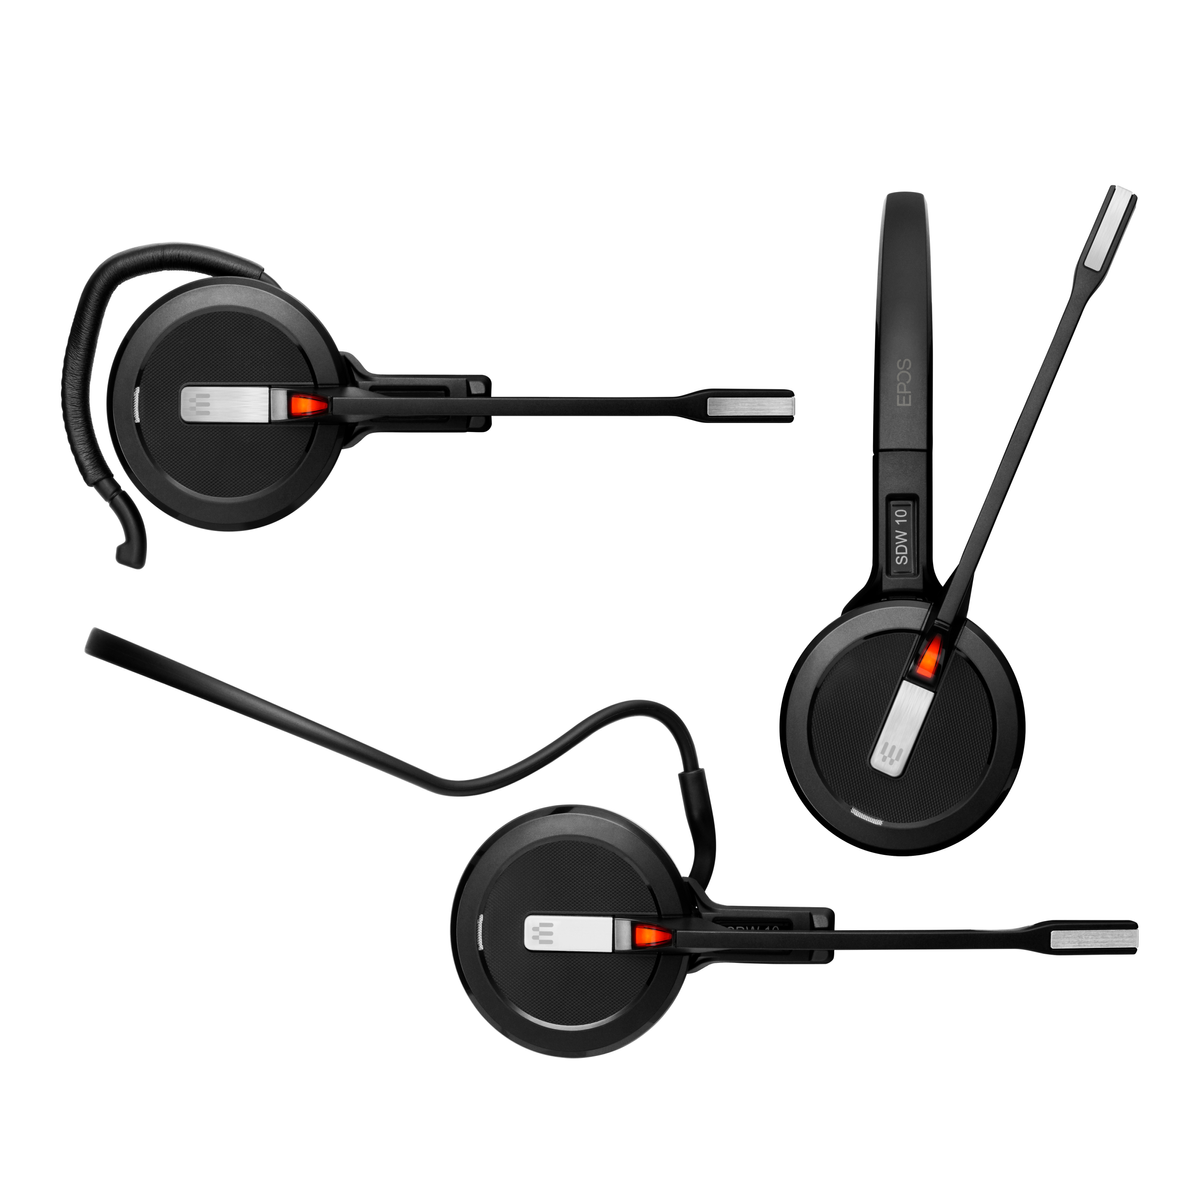 Mono-Headset Schwarz IMPACT On-ear 5013 - EU/UK/AUS, SDW SENNHEISER